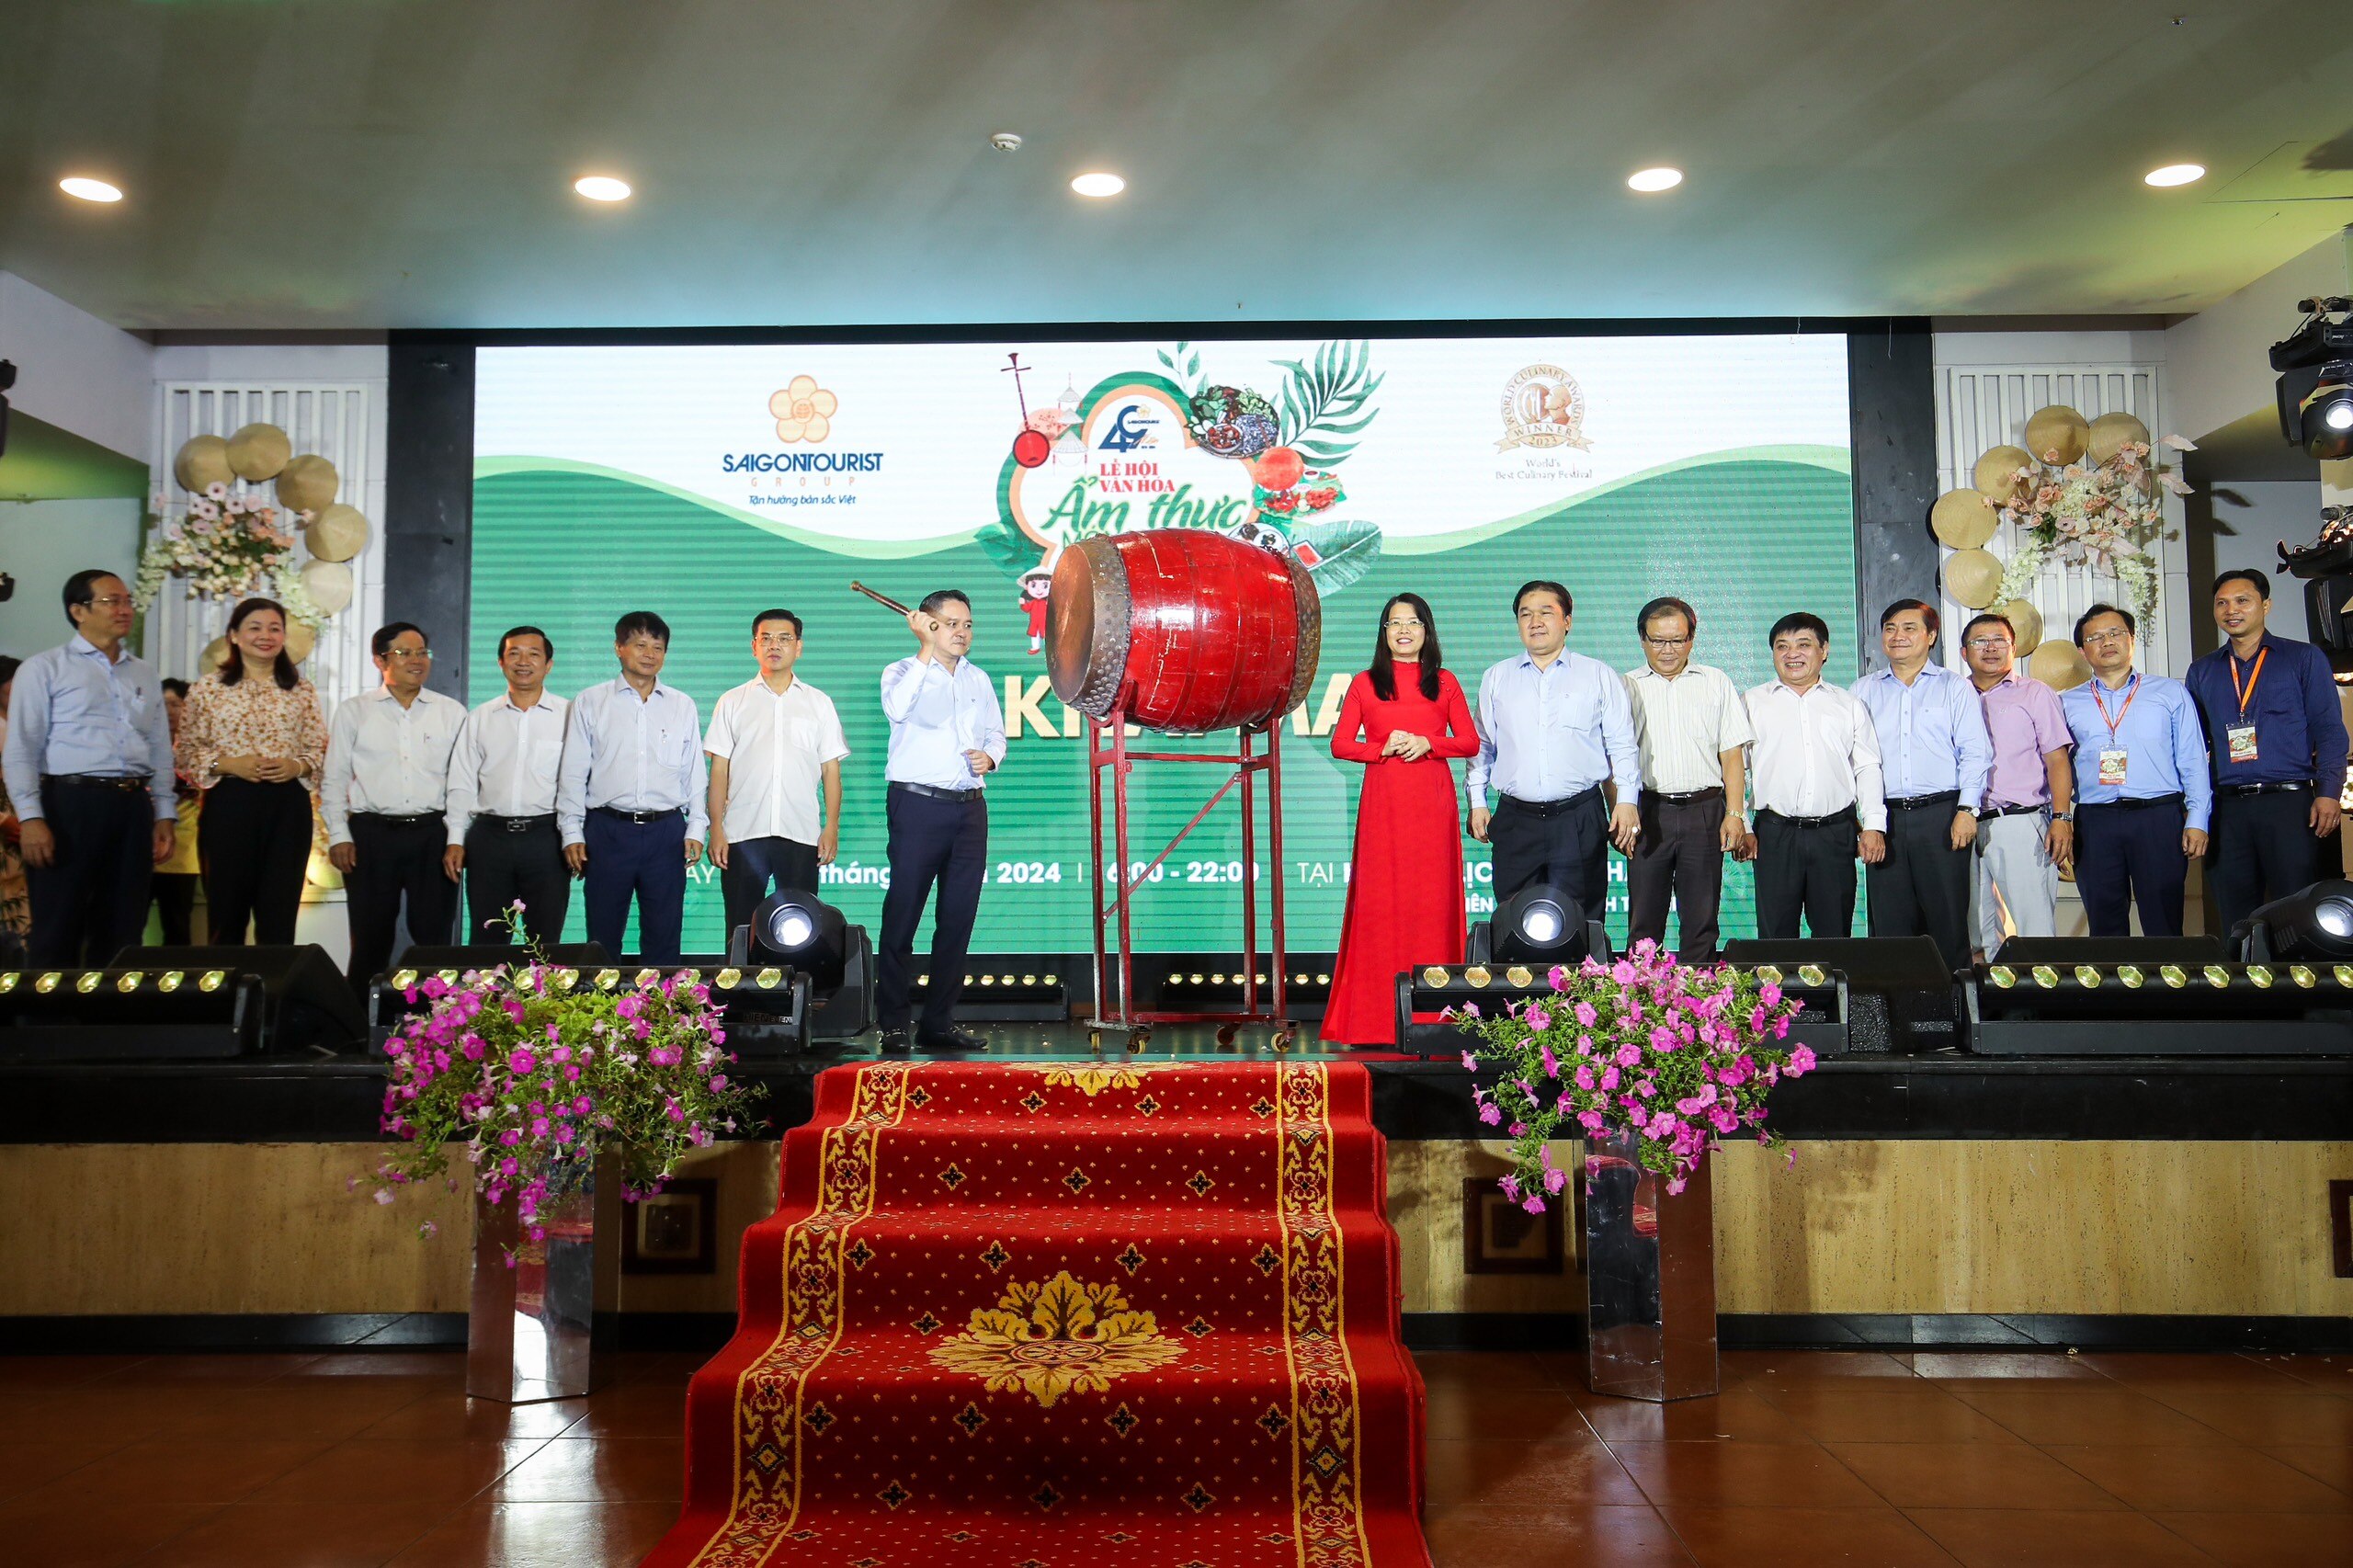 Ông Phạm Huy Bình, Chủ tịch HĐTV Saigontourist Group cùng các đại biểu tham dự chương trình đánh trống khai mạc lễ hội- Ảnh: Nhật Thịnh